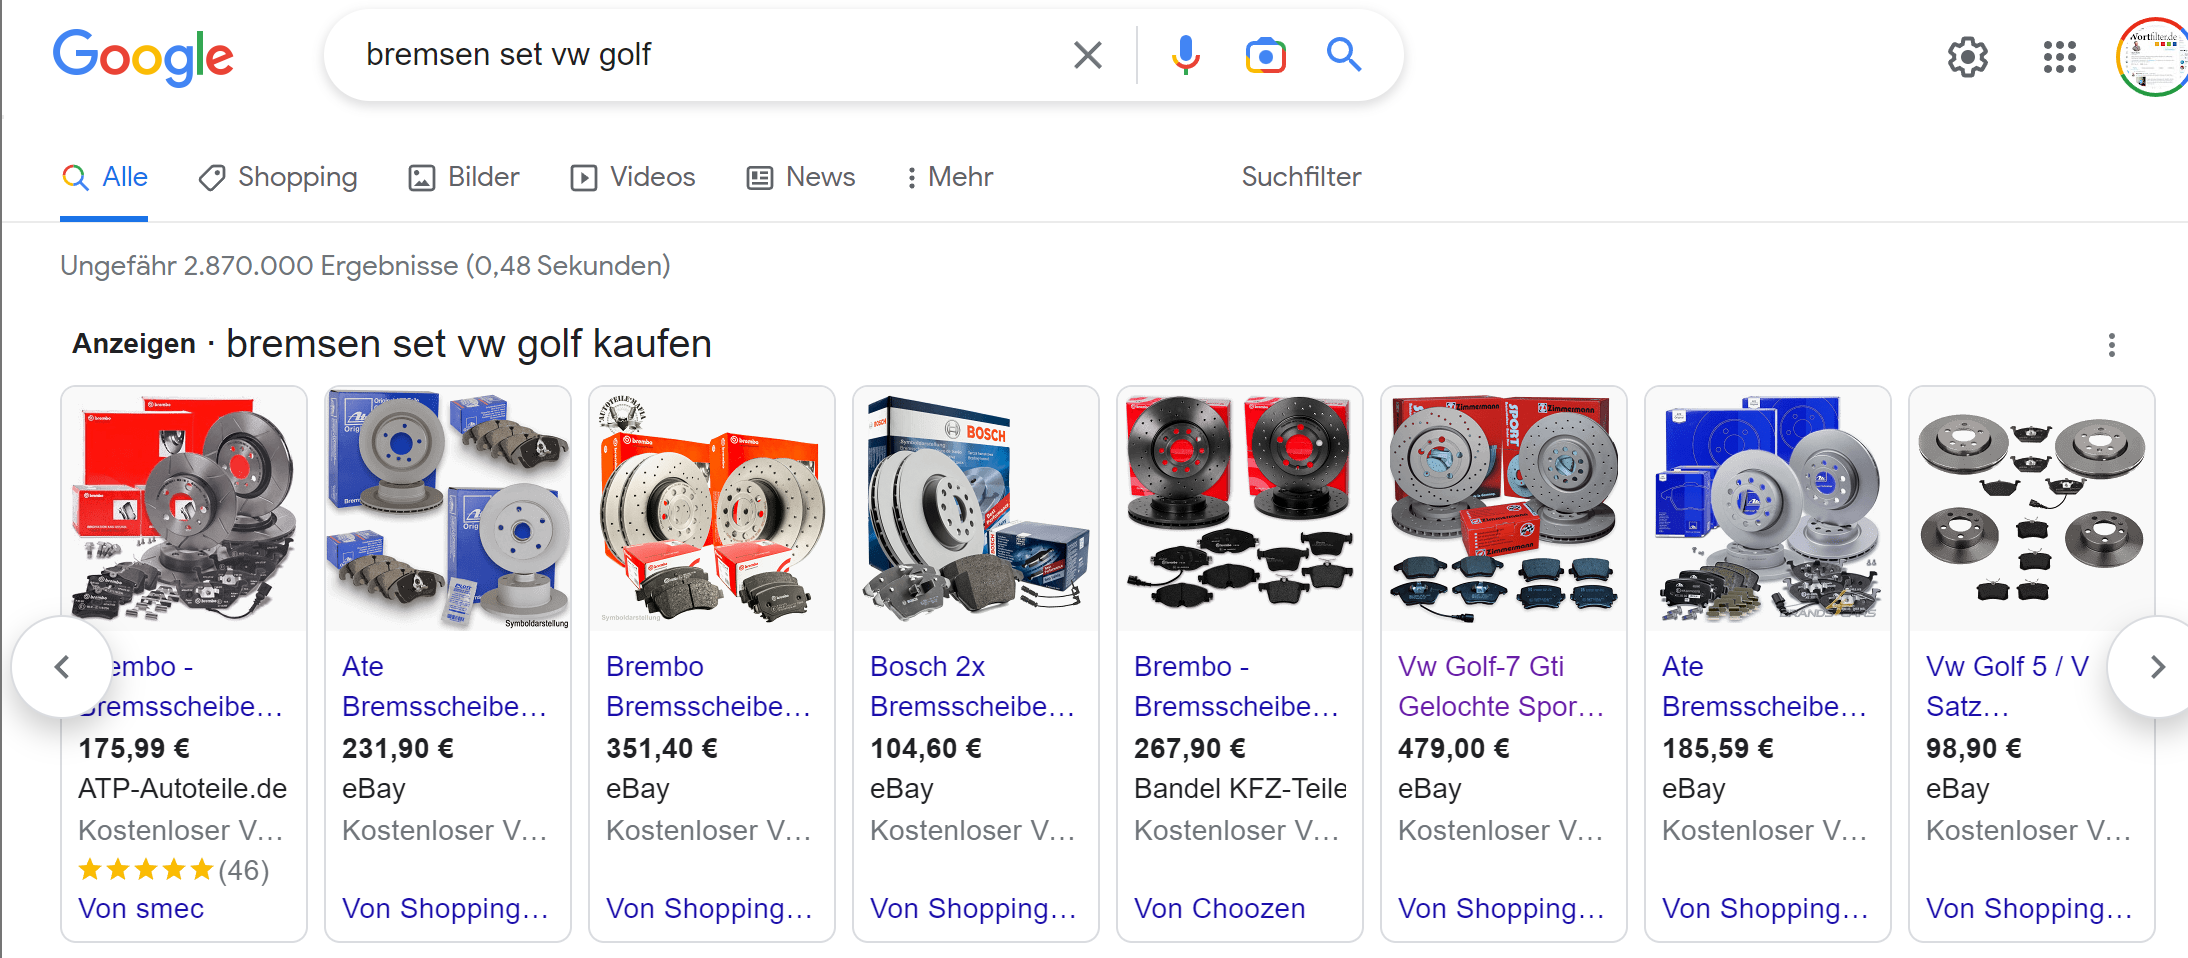 eBay Angebote für Google Shopping optimieren